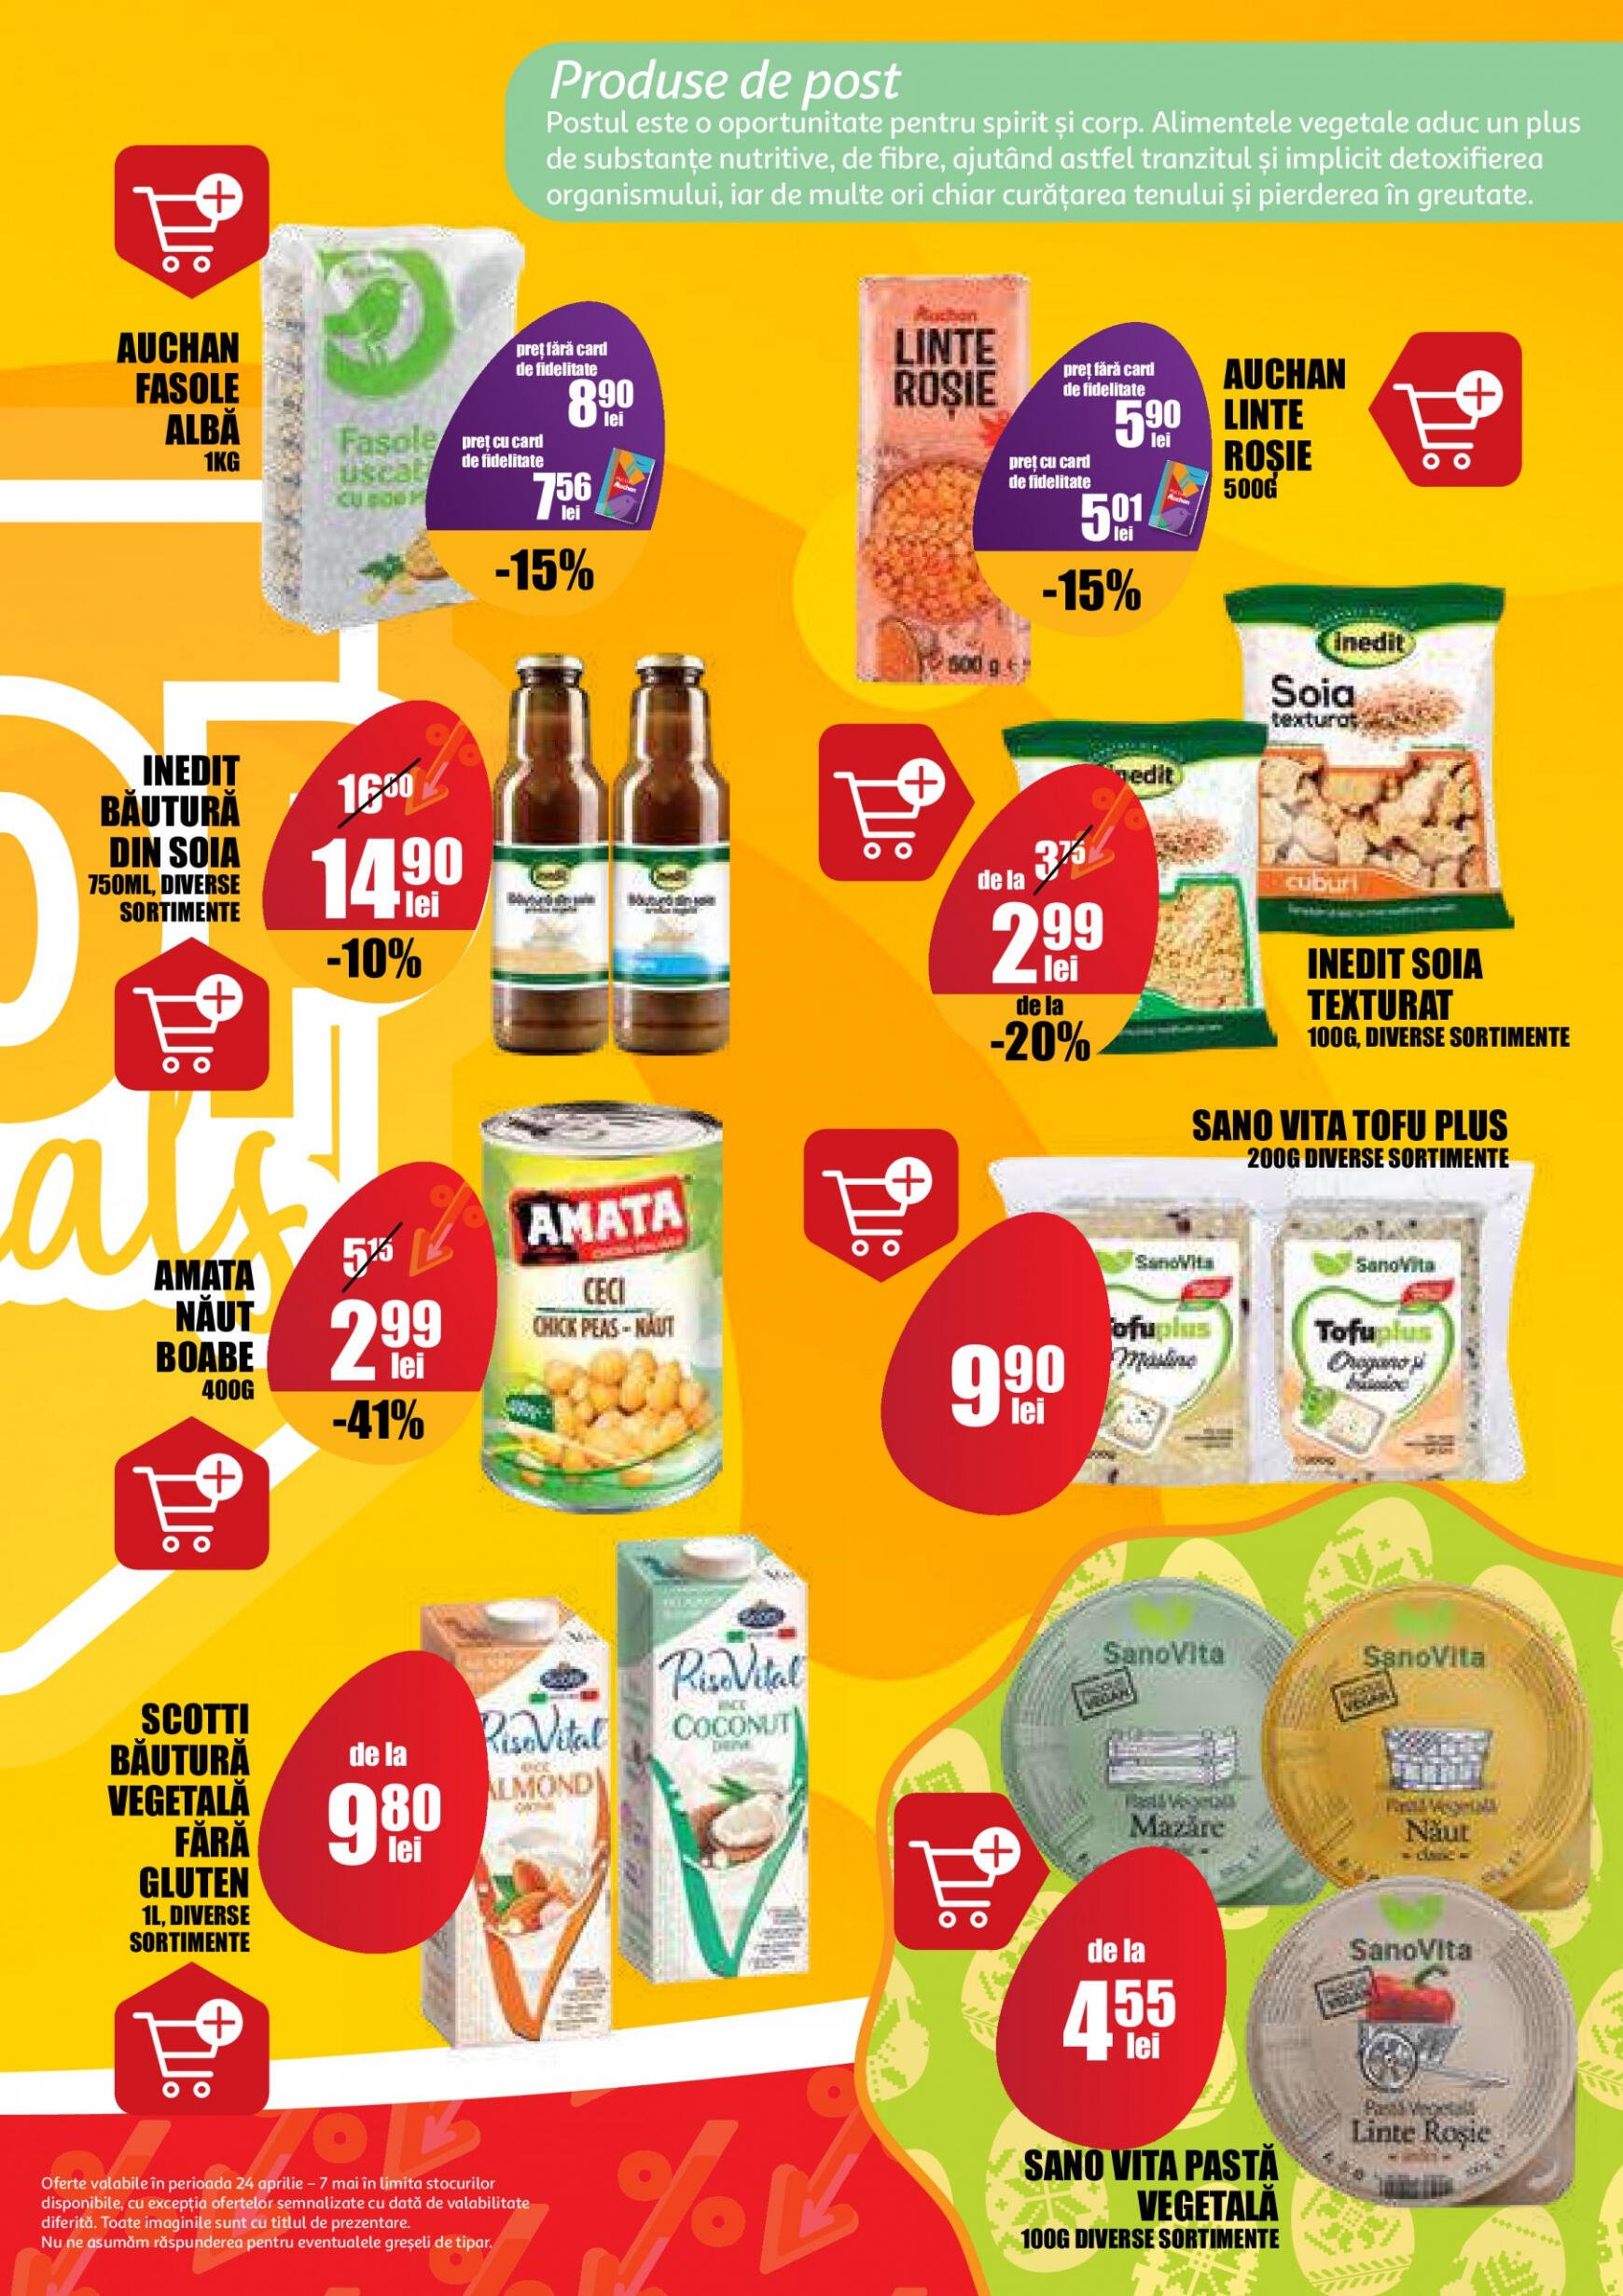 auchan - Catalog nou Auchan 24.04. - 07.05. - page: 5